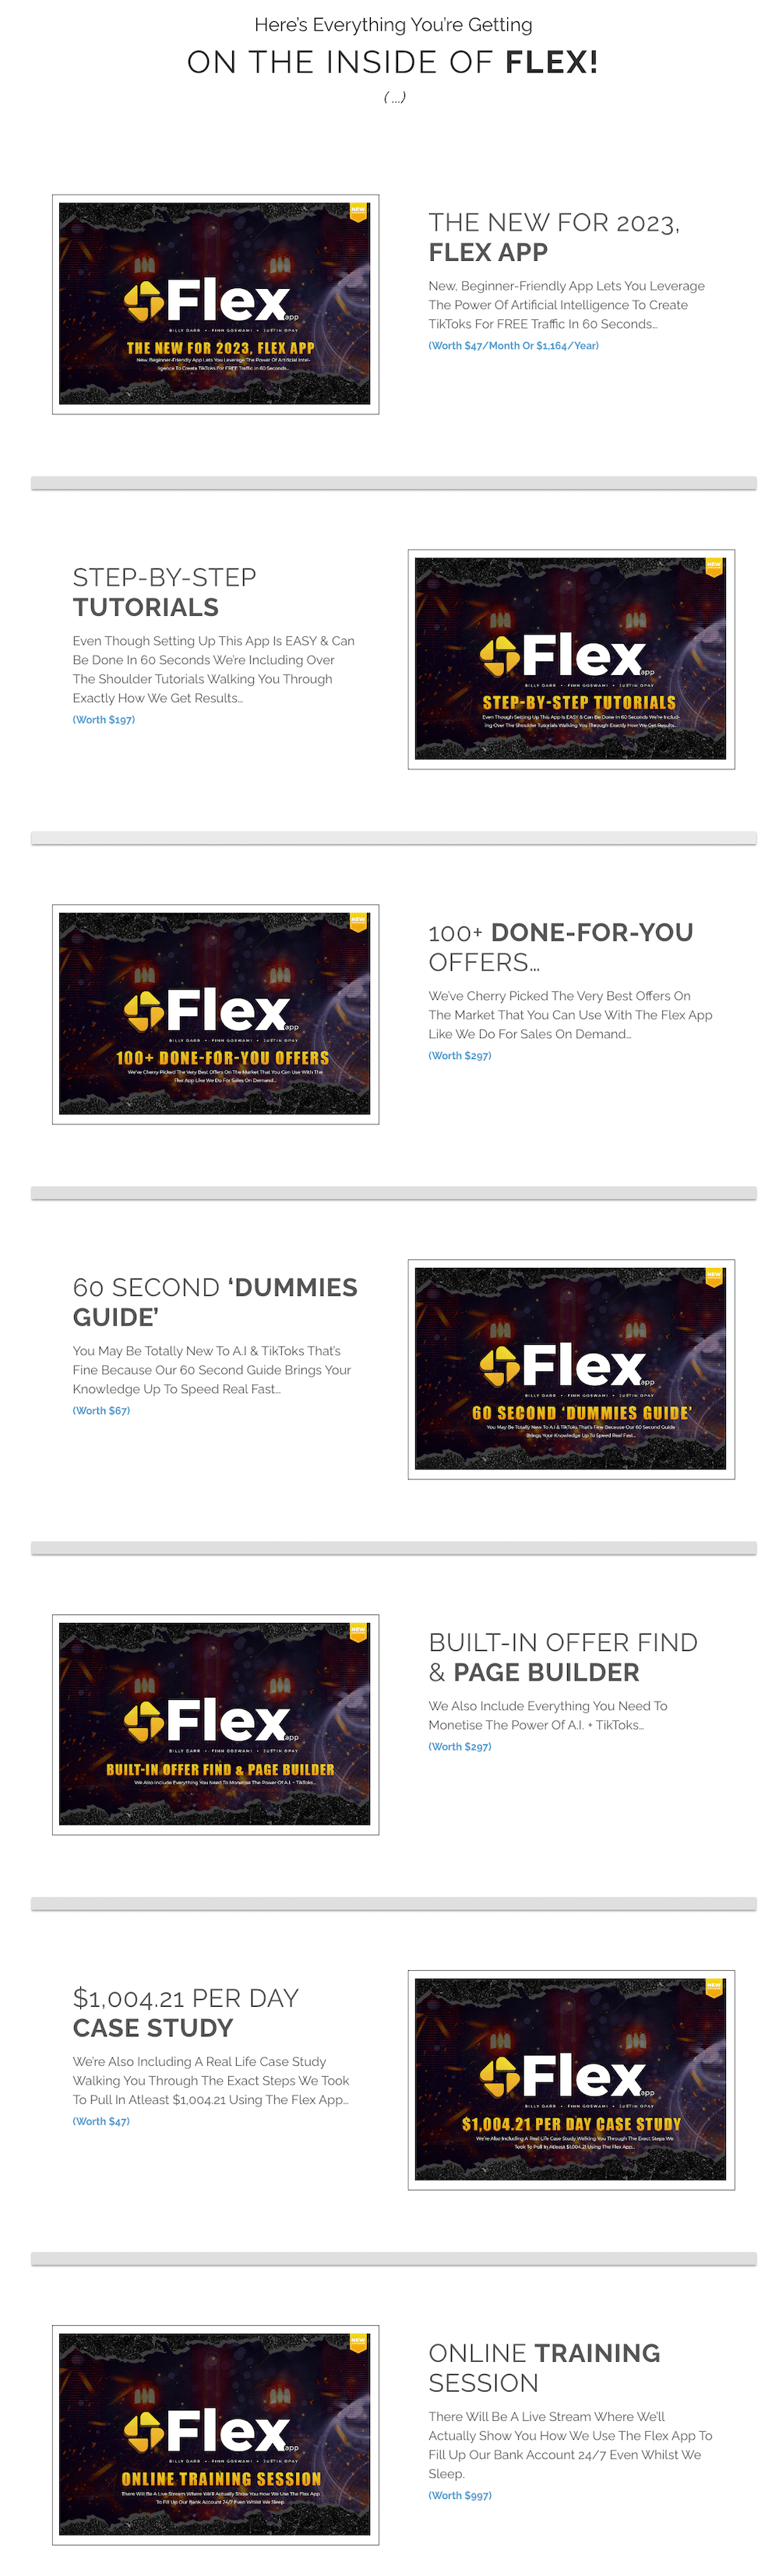 Flex-App-Review-Features